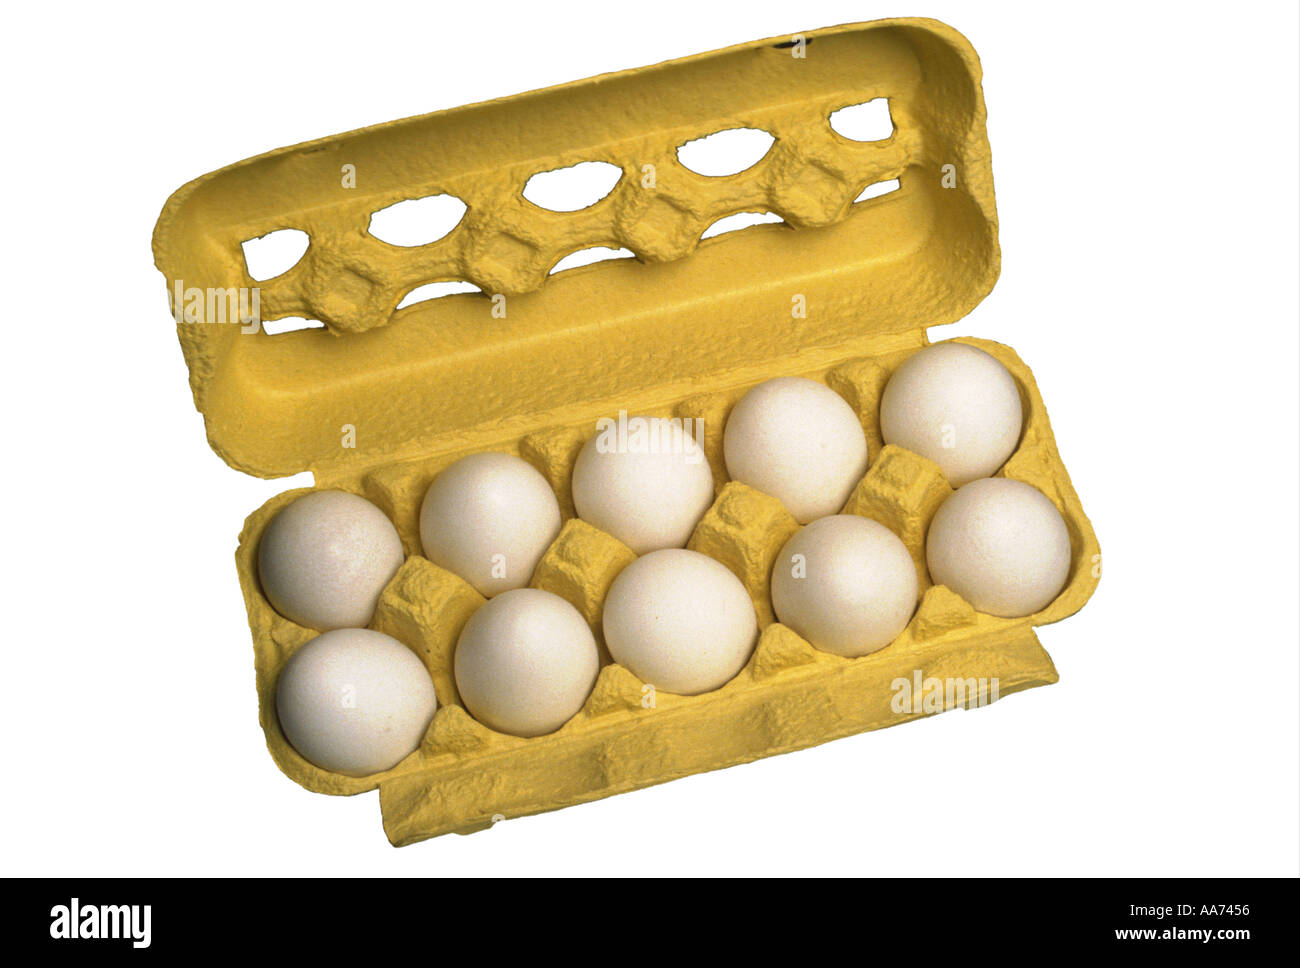 eggs ten fresh hen s eggs in a package Stock Photo